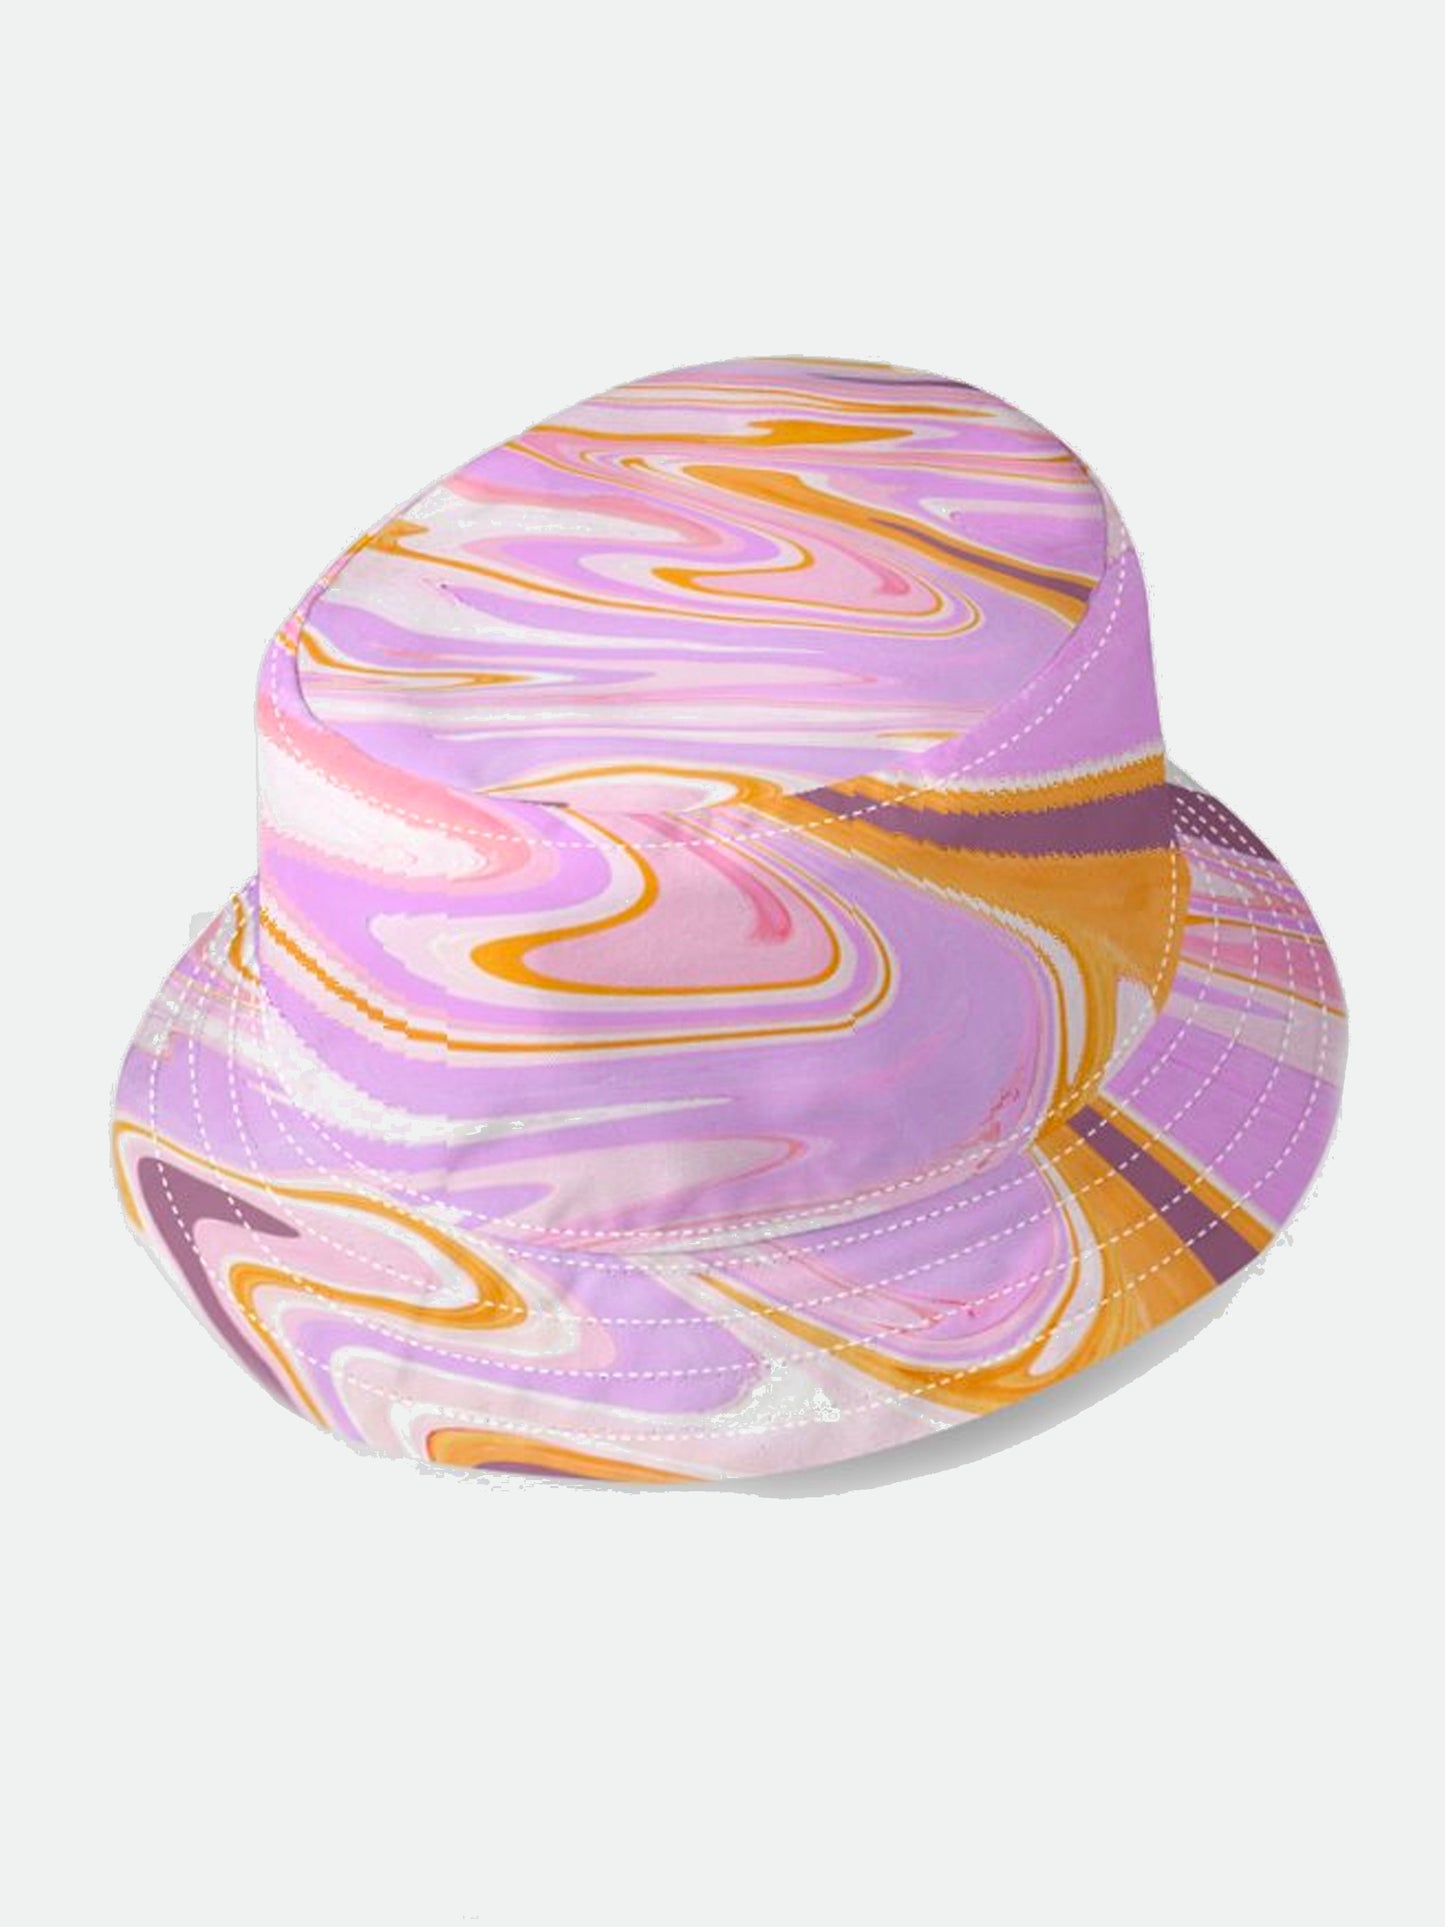 Unisex Groovy Stripe Bucket Hat in Two Colour-ways